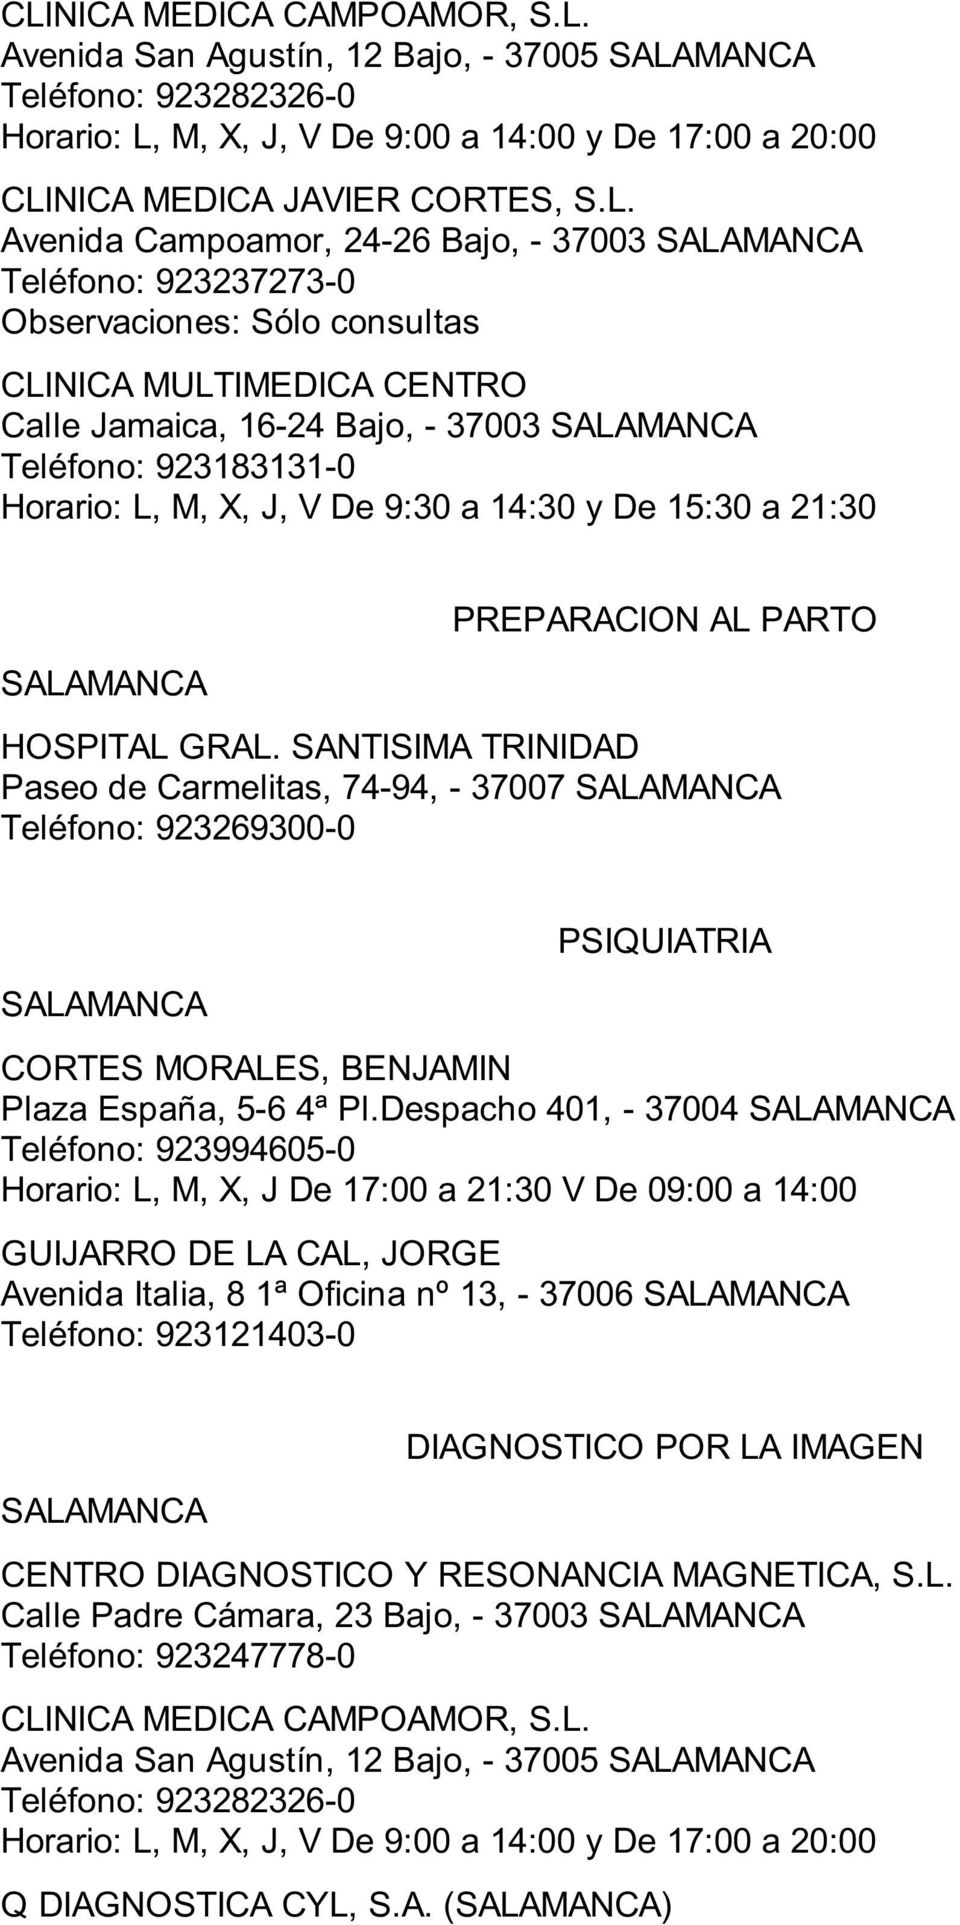 PREPARACION AL PARTO Paseo de Carmelitas, 74-94, - 37007 PSIQUIATRIA CORTES MORALES, BENJAMIN Plaza España, 5-6 4ª Pl.